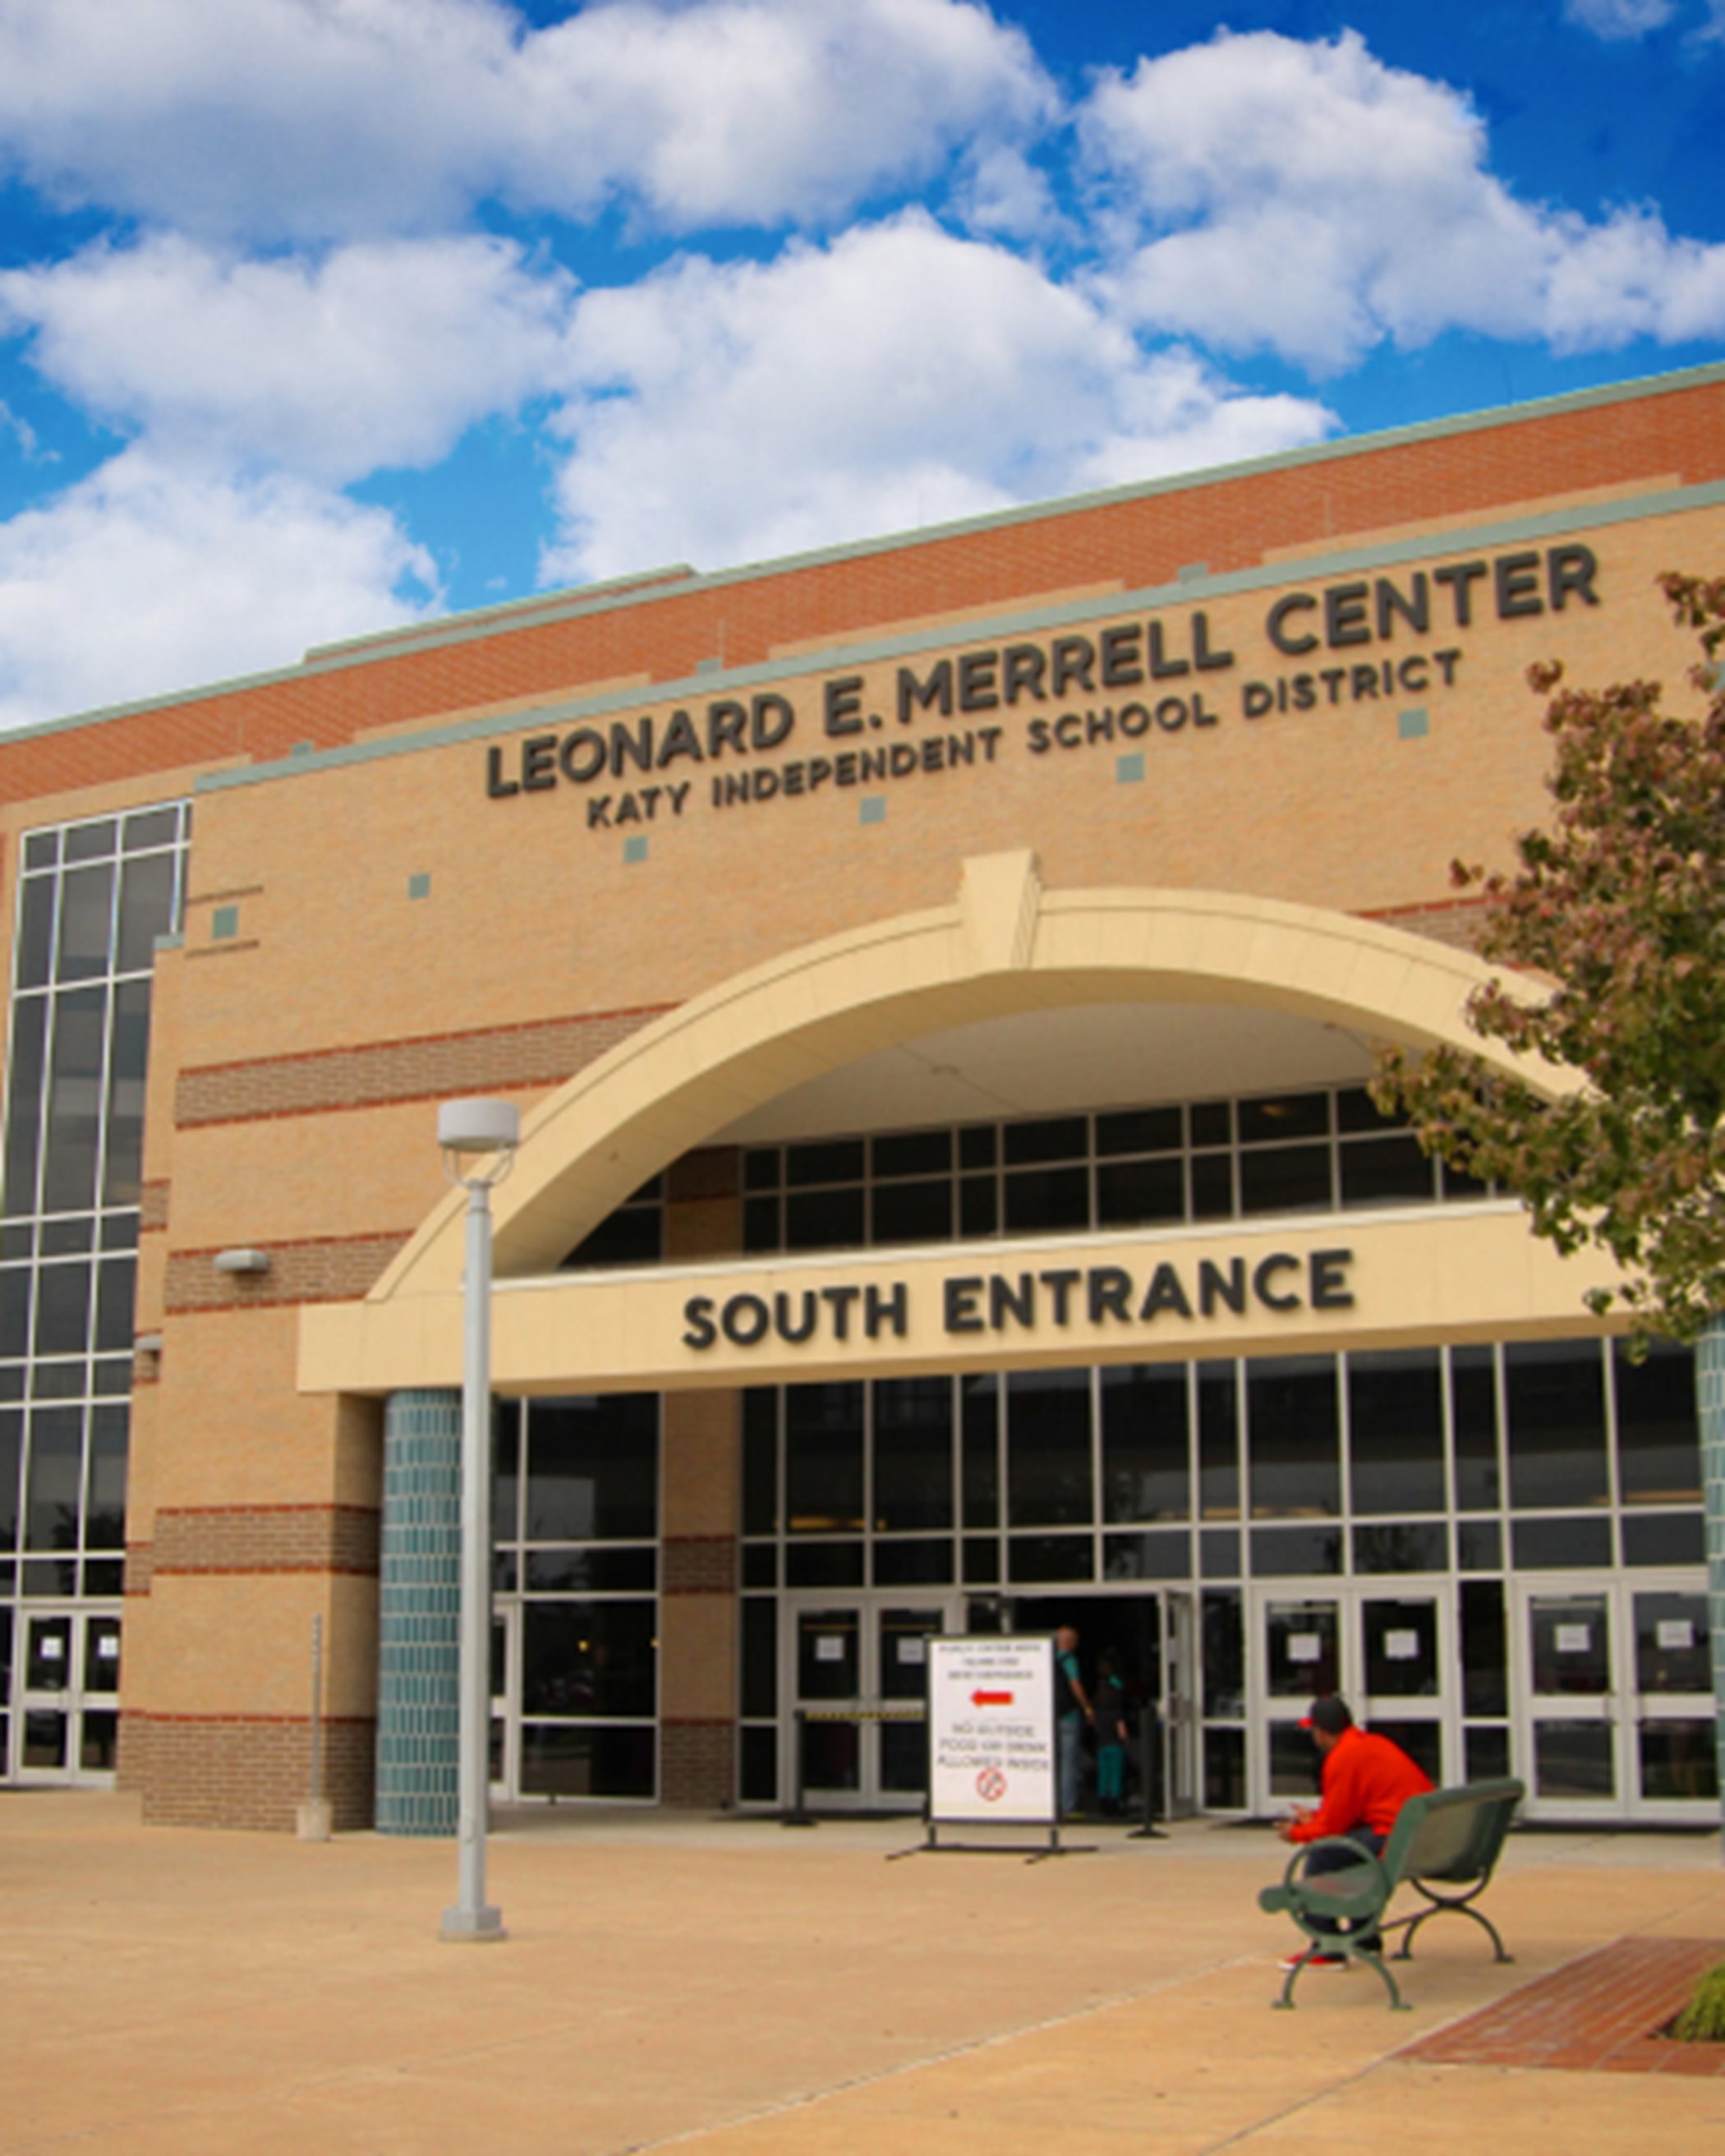 Leonard E. Merrell Center